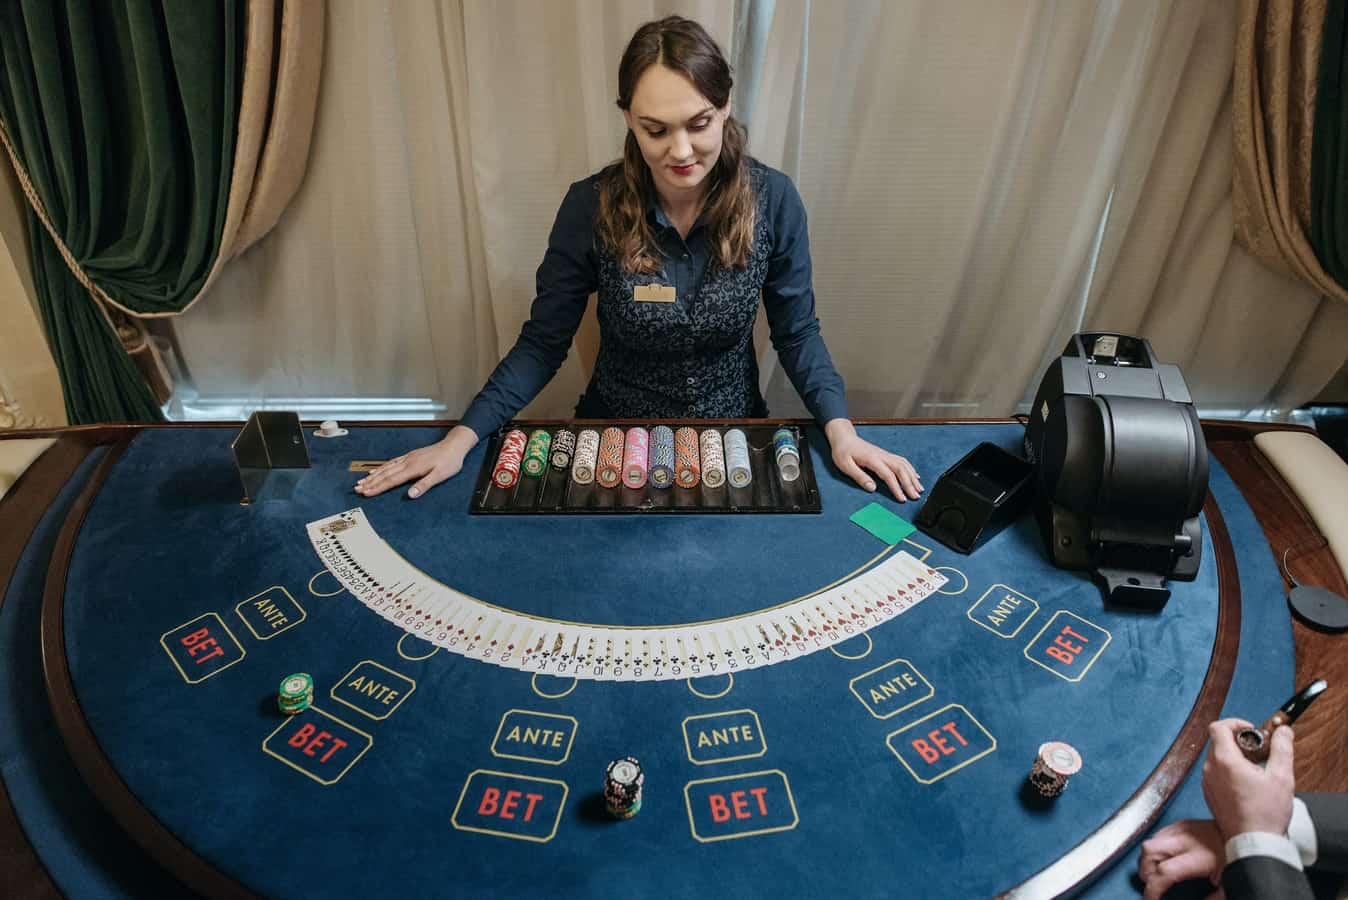 Как делать ставки в онлайн казино три мужчины сидели и играли в карты за столом с тремя ножками